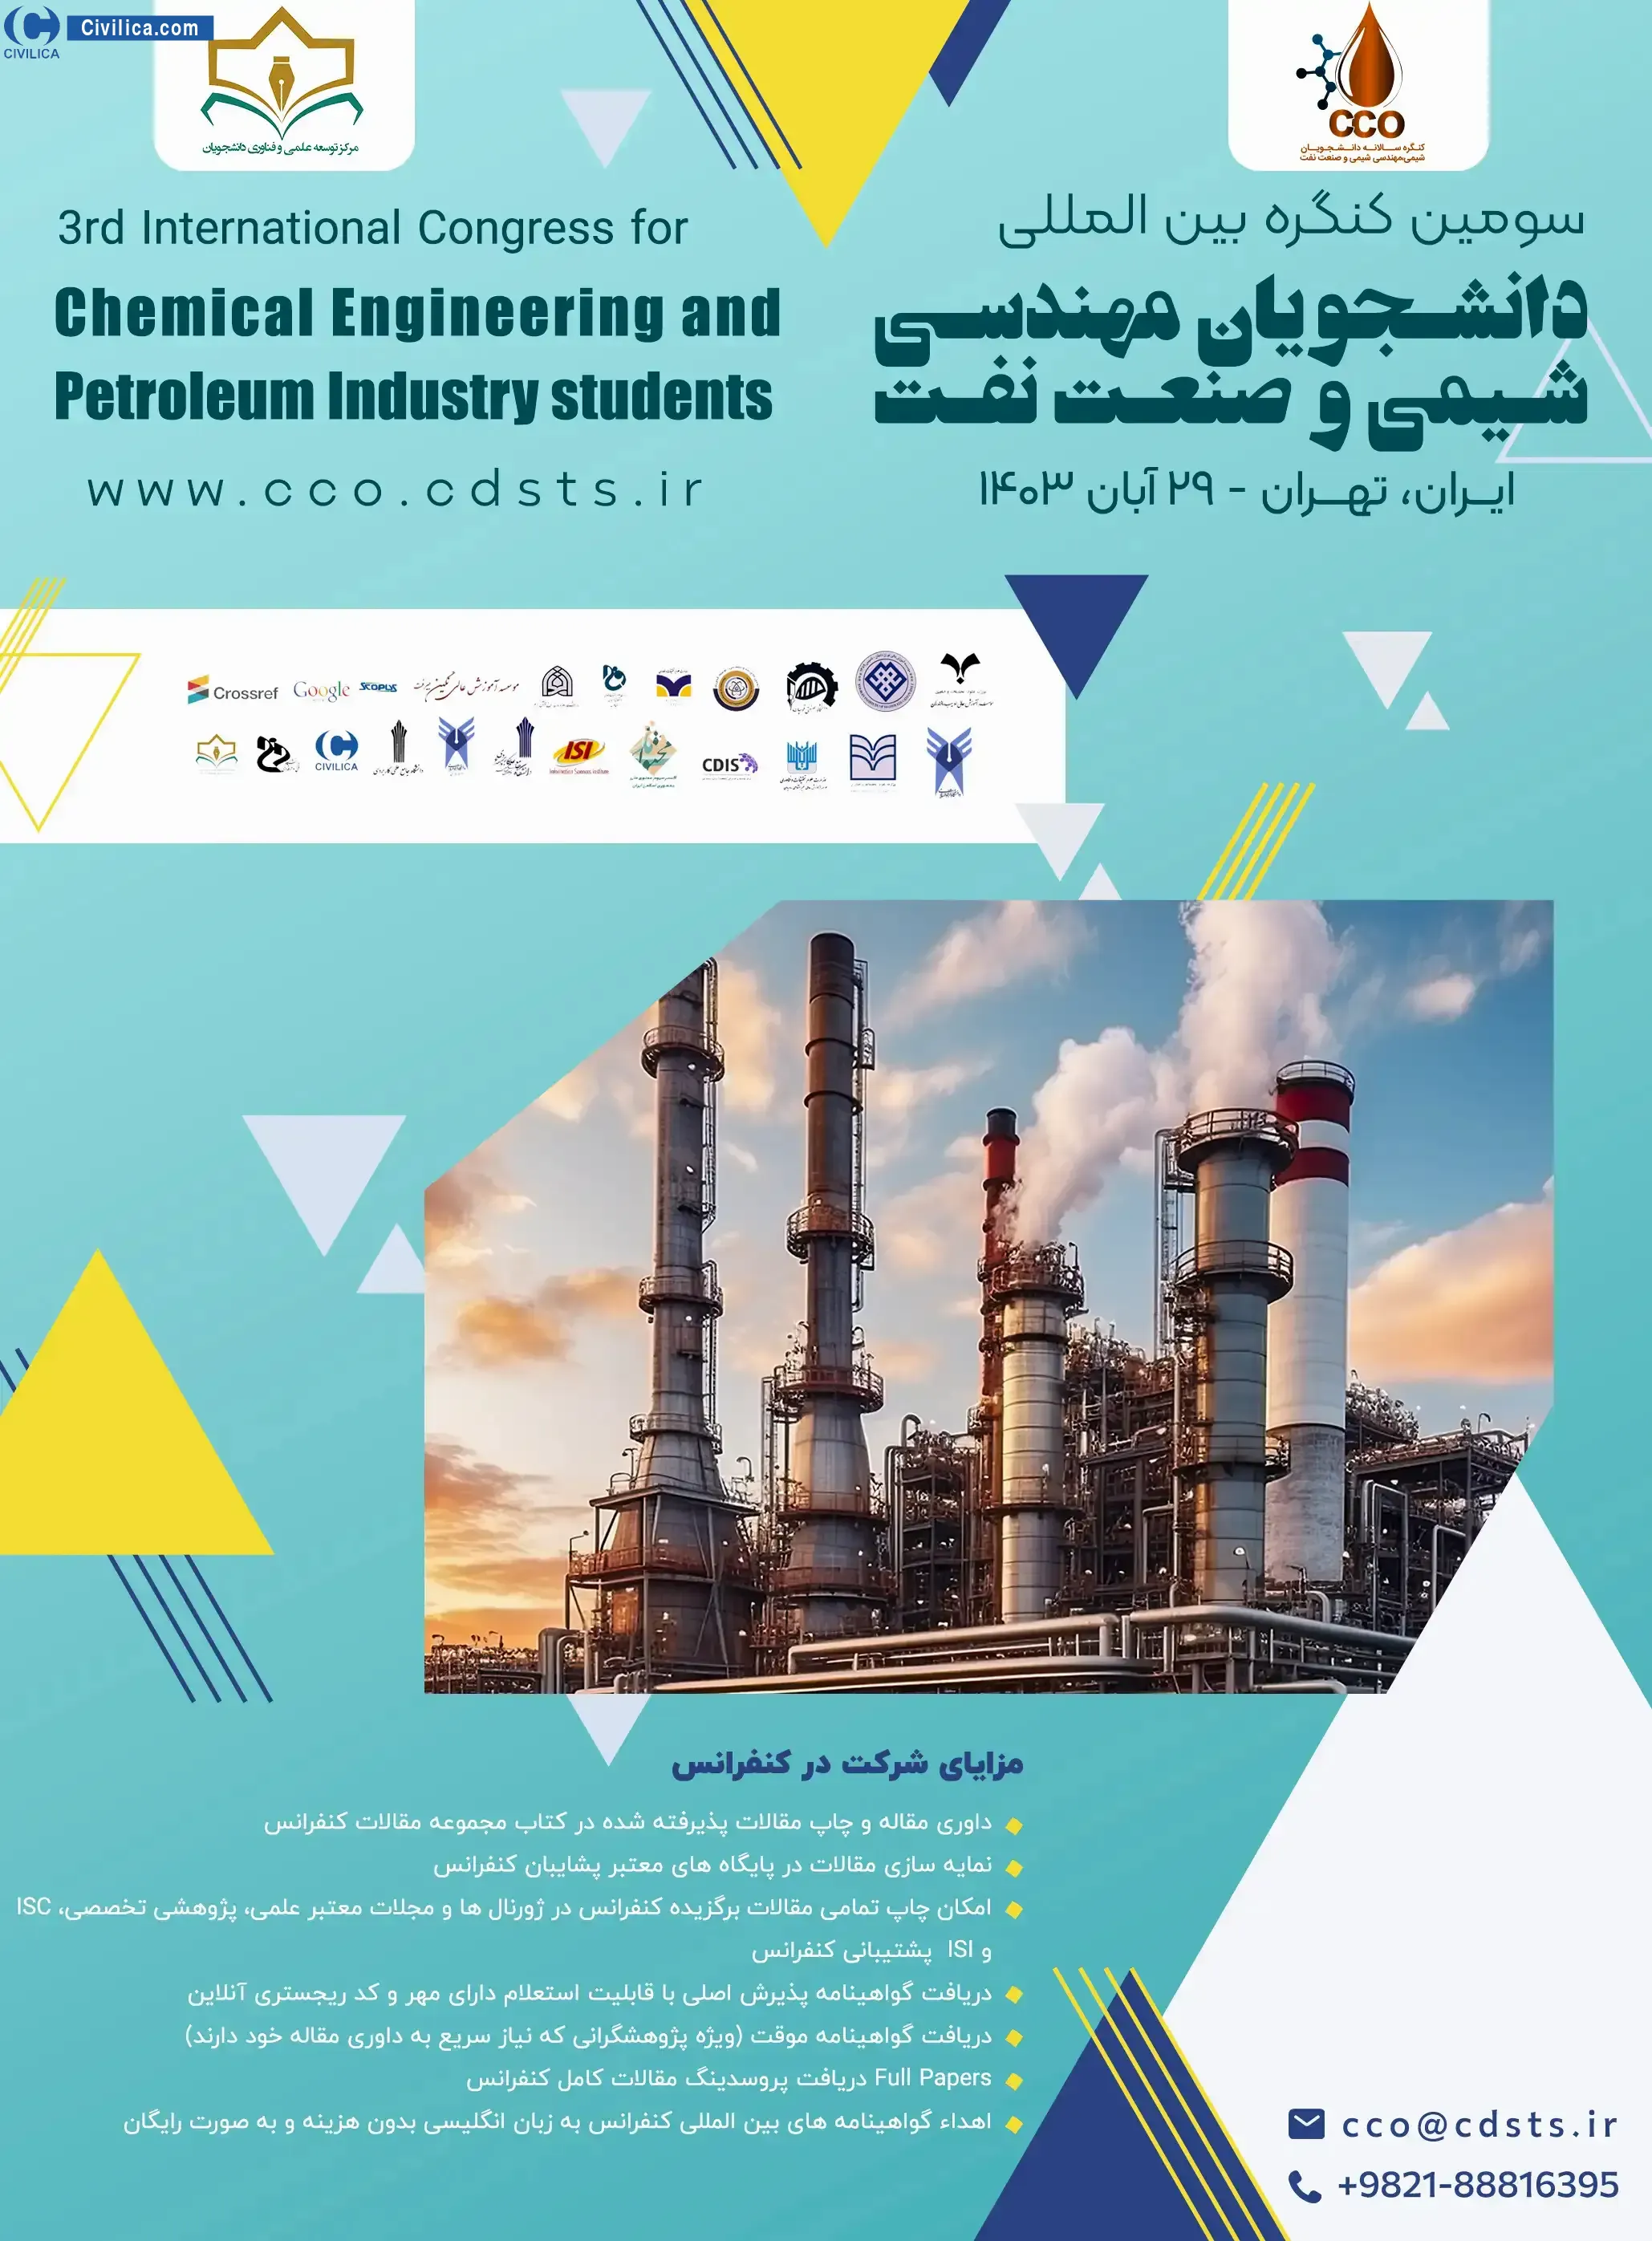 سومین کنگره بین المللی دانشجویان مهندسی شیمی و صنعت نفت